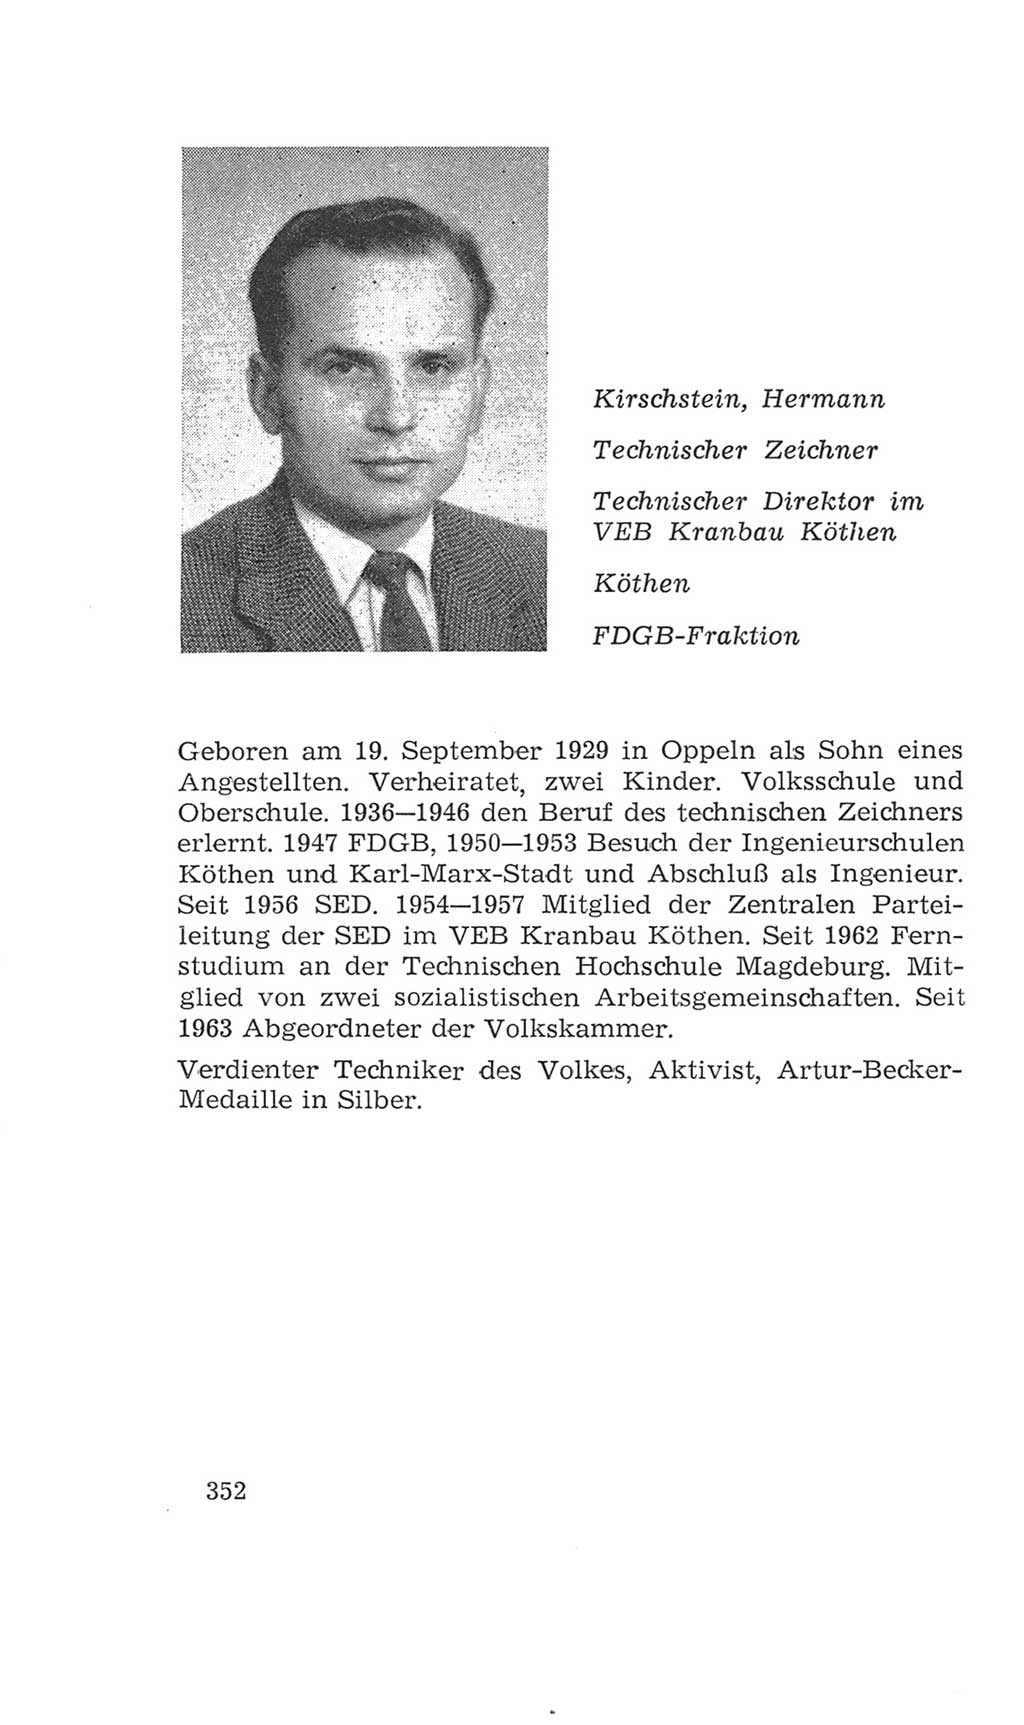 Volkskammer (VK) der Deutschen Demokratischen Republik (DDR), 4. Wahlperiode 1963-1967, Seite 352 (VK. DDR 4. WP. 1963-1967, S. 352)